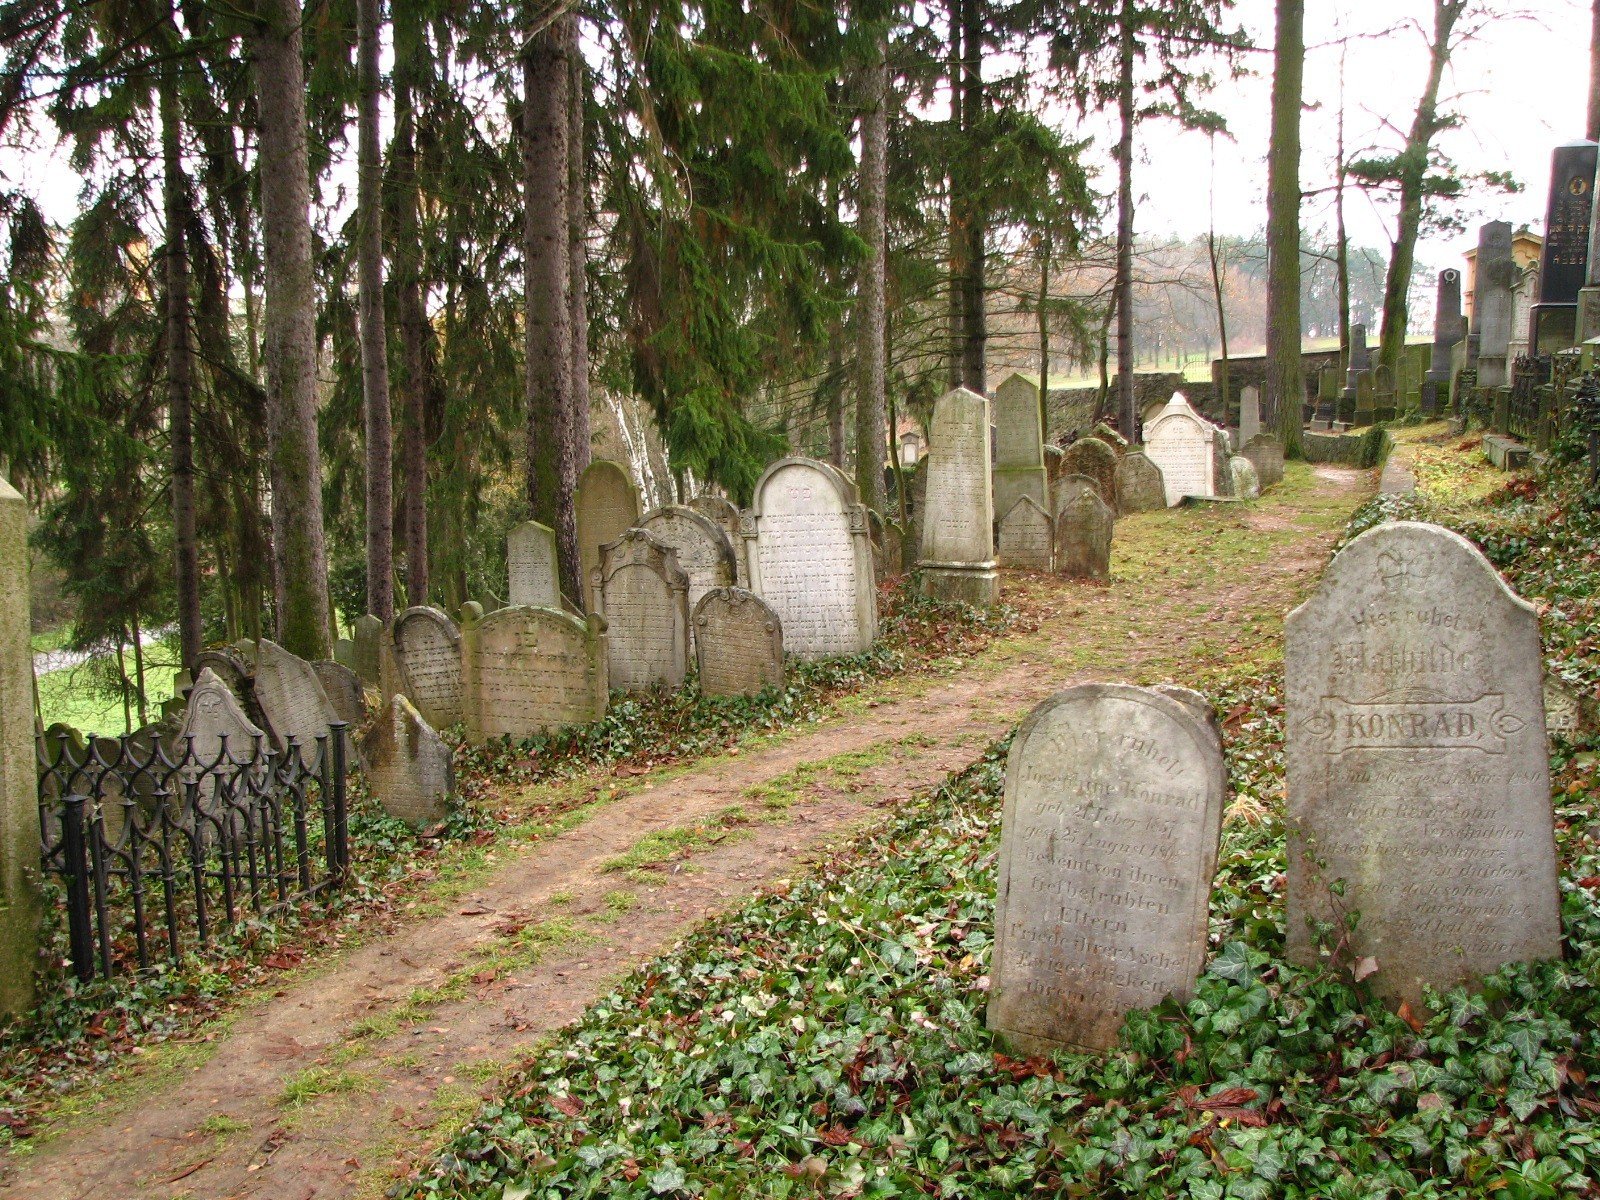 Třebíč judiska kyrkogården